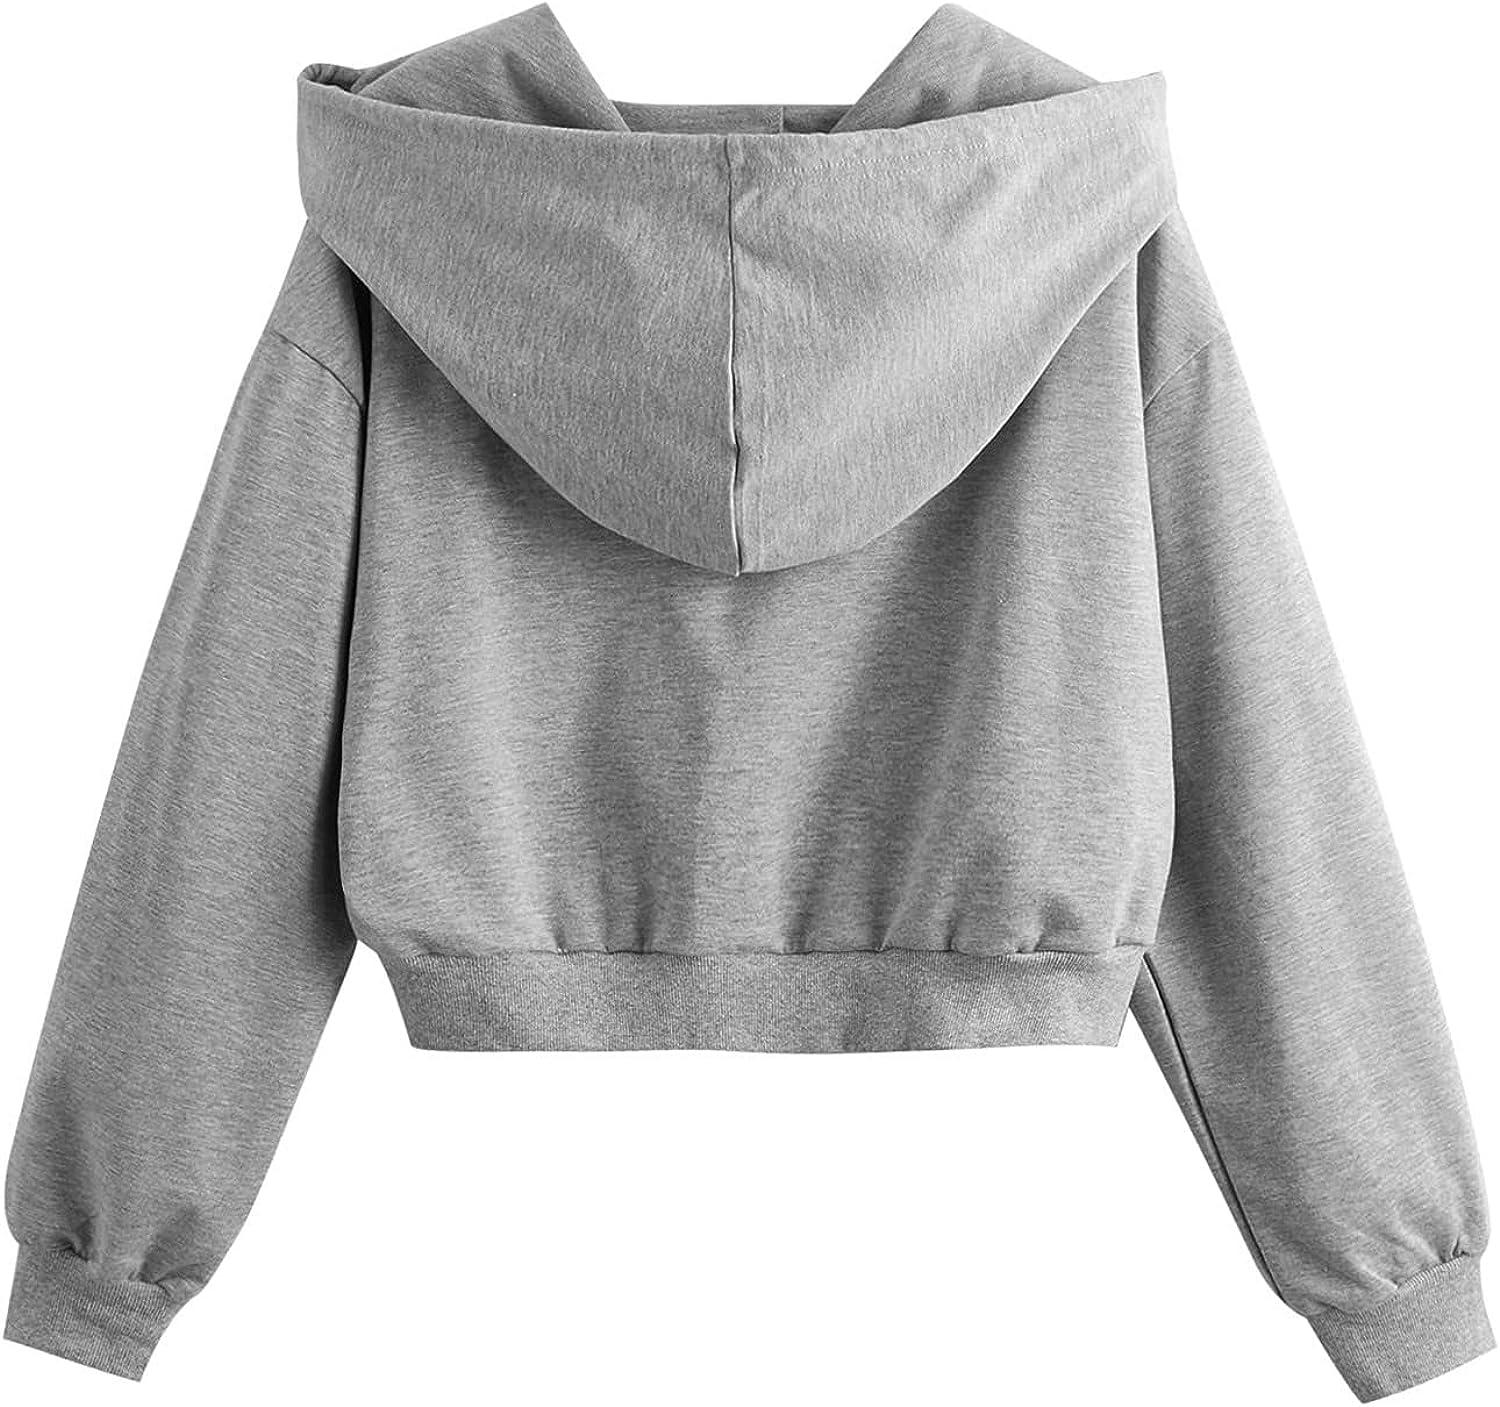 Women's Hoodie Lightweight Tie Dye Print Crop Top Hooded Sweatshirt Long  Sleeves Cropped Sweatshirts Teen Girls Tops Medium T-cf-gray